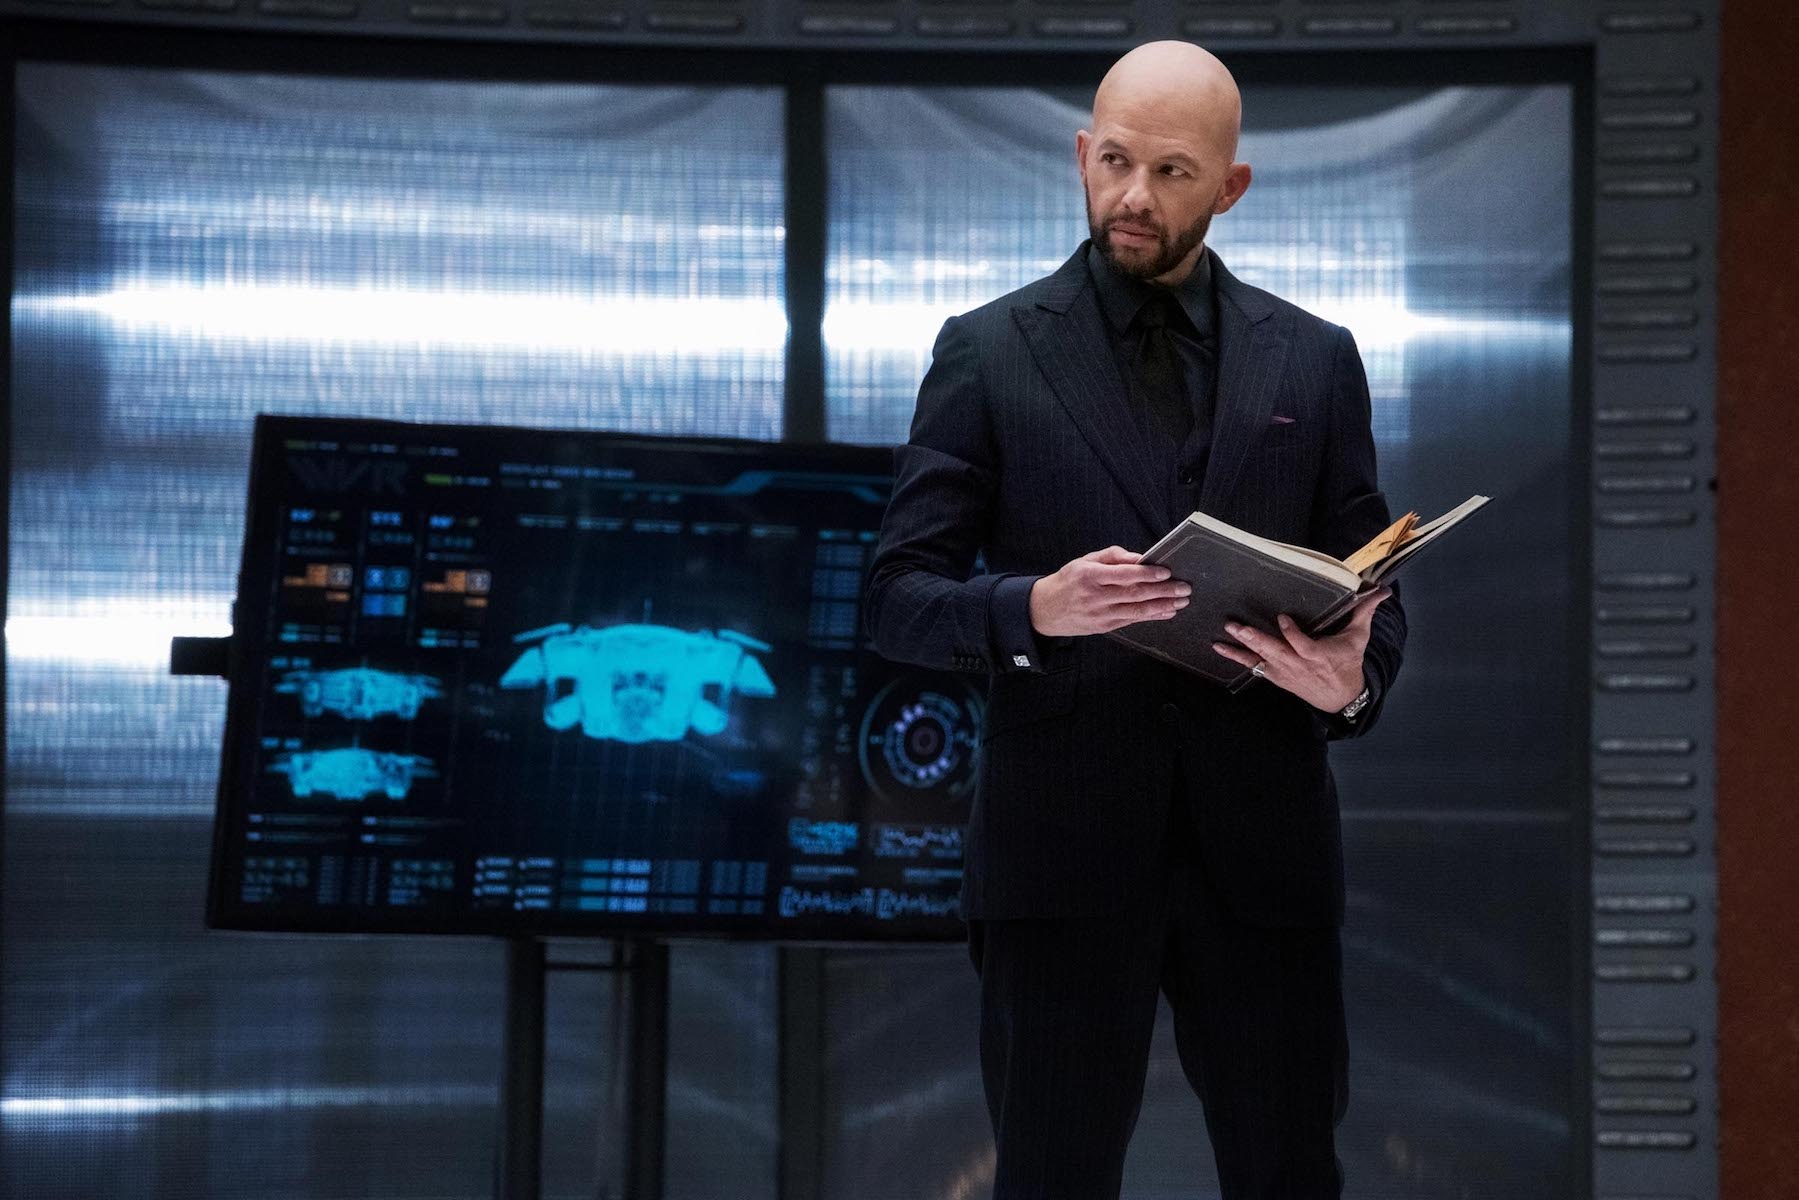 Jon Cryer as Lex Luthor